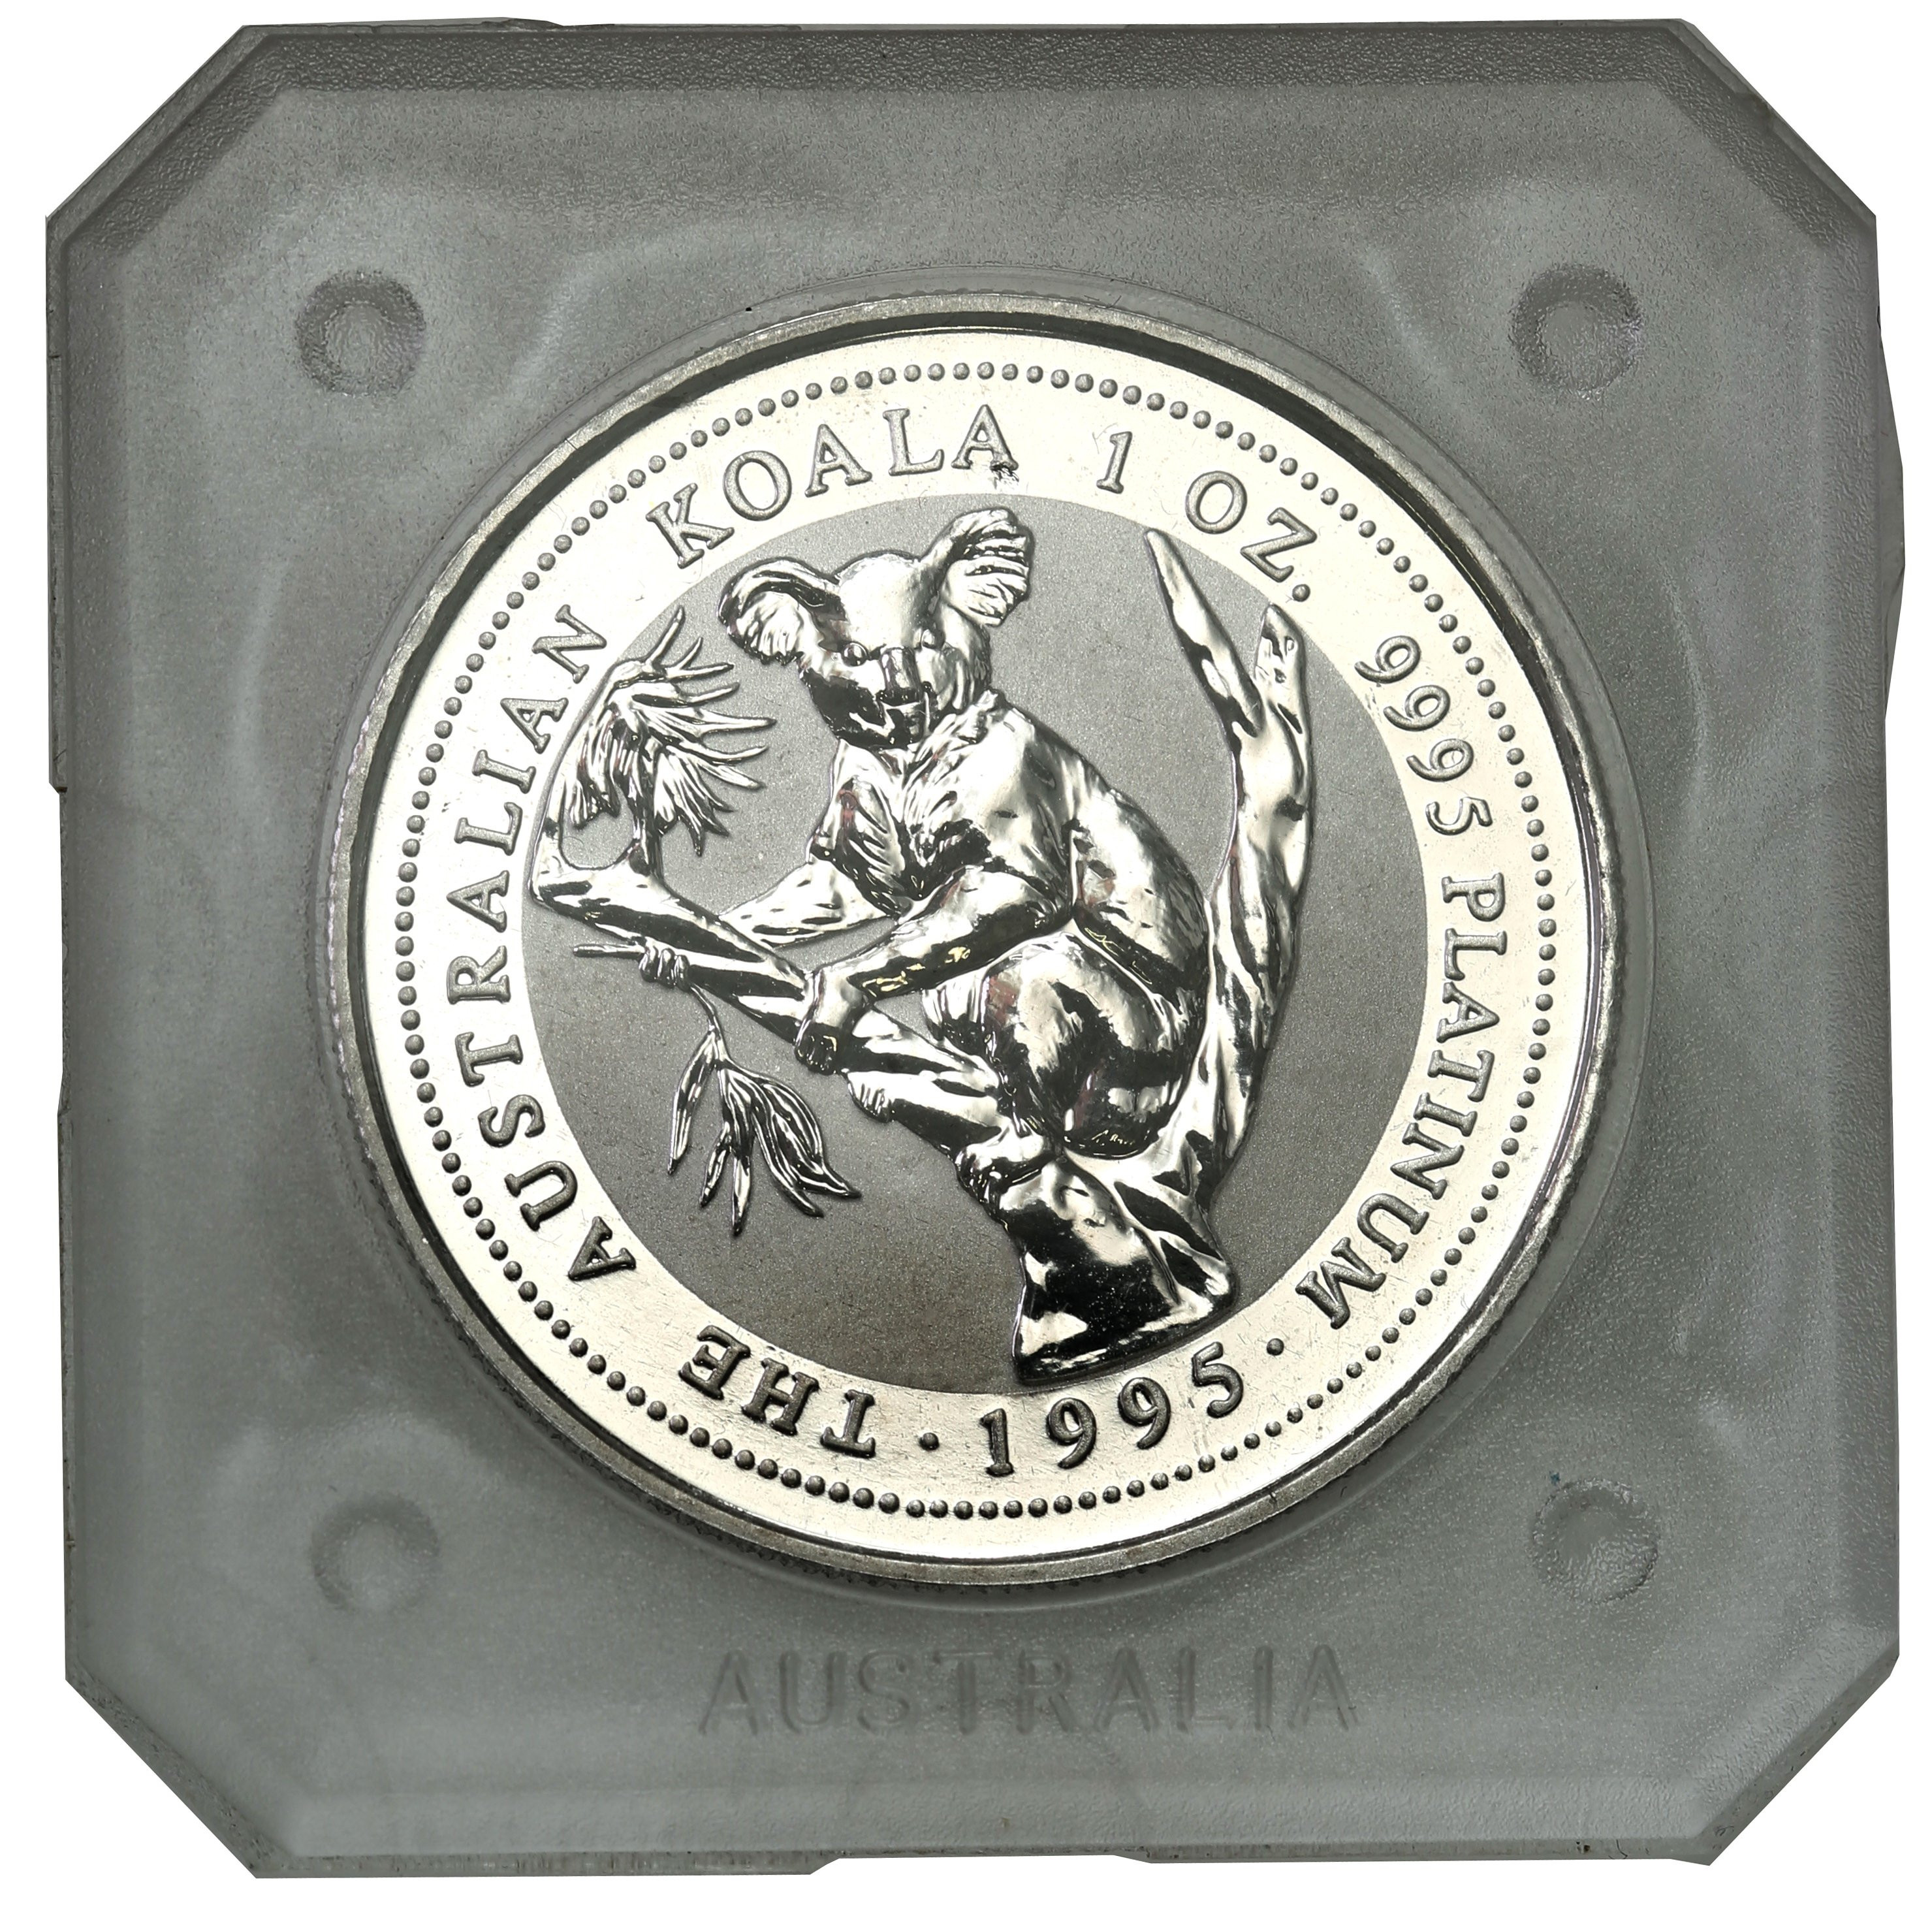 Australia. Elżbieta II 100 dolarów 1995 Koala - 1 uncja platyny - st. L